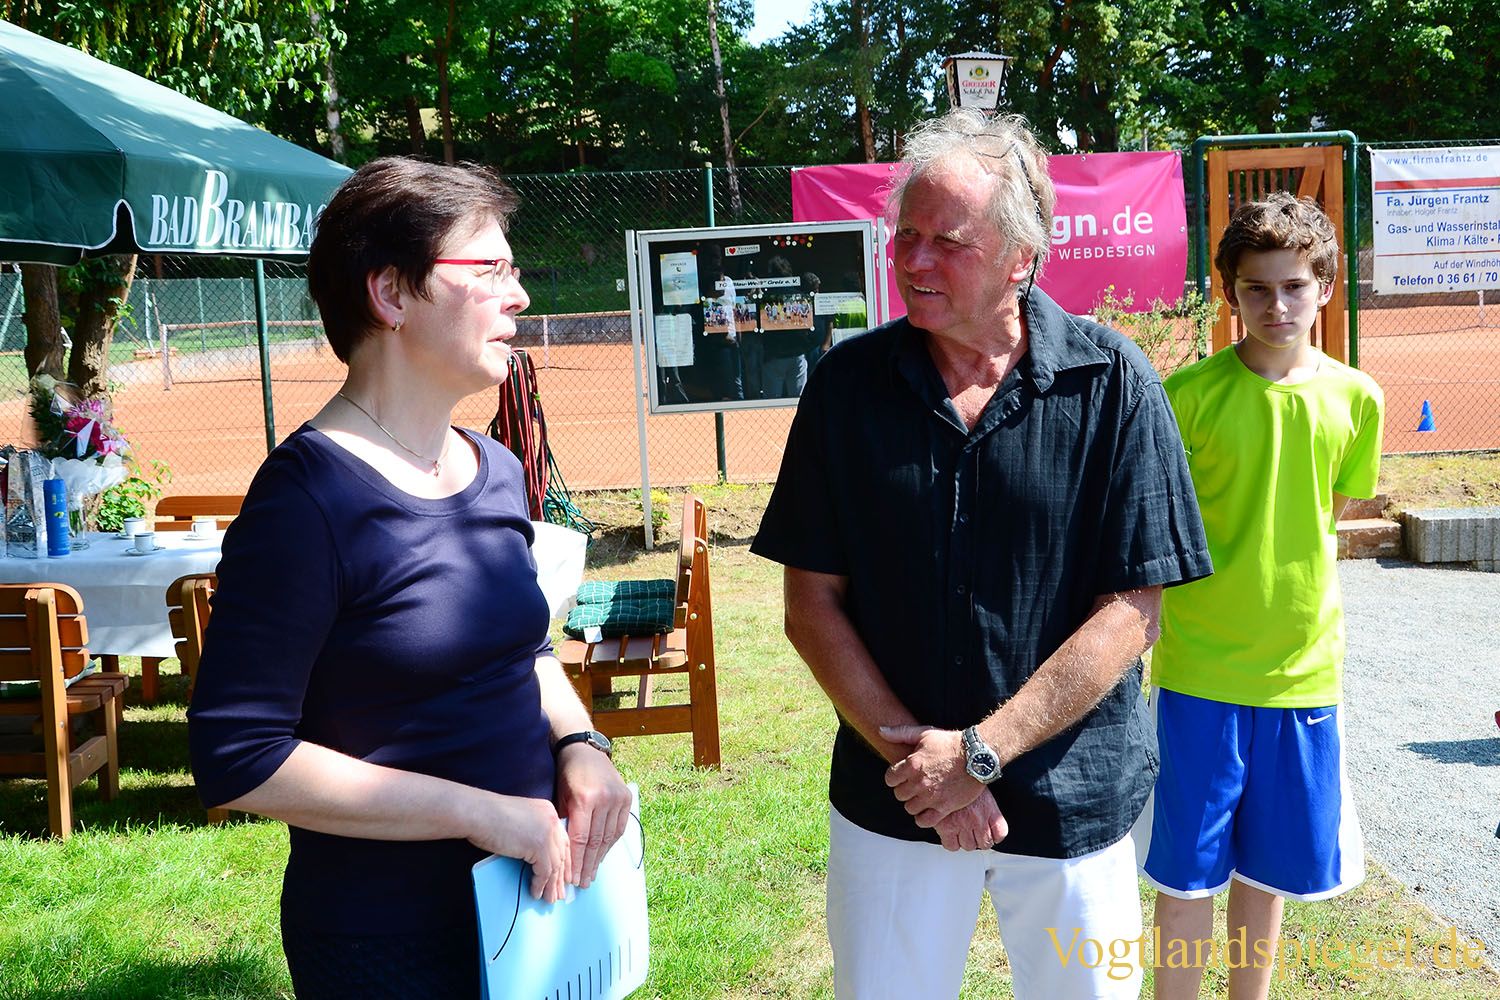 Tennis-Club Blau-Weiß Greiz: Zaunbau mit Lottomitteln gefördert